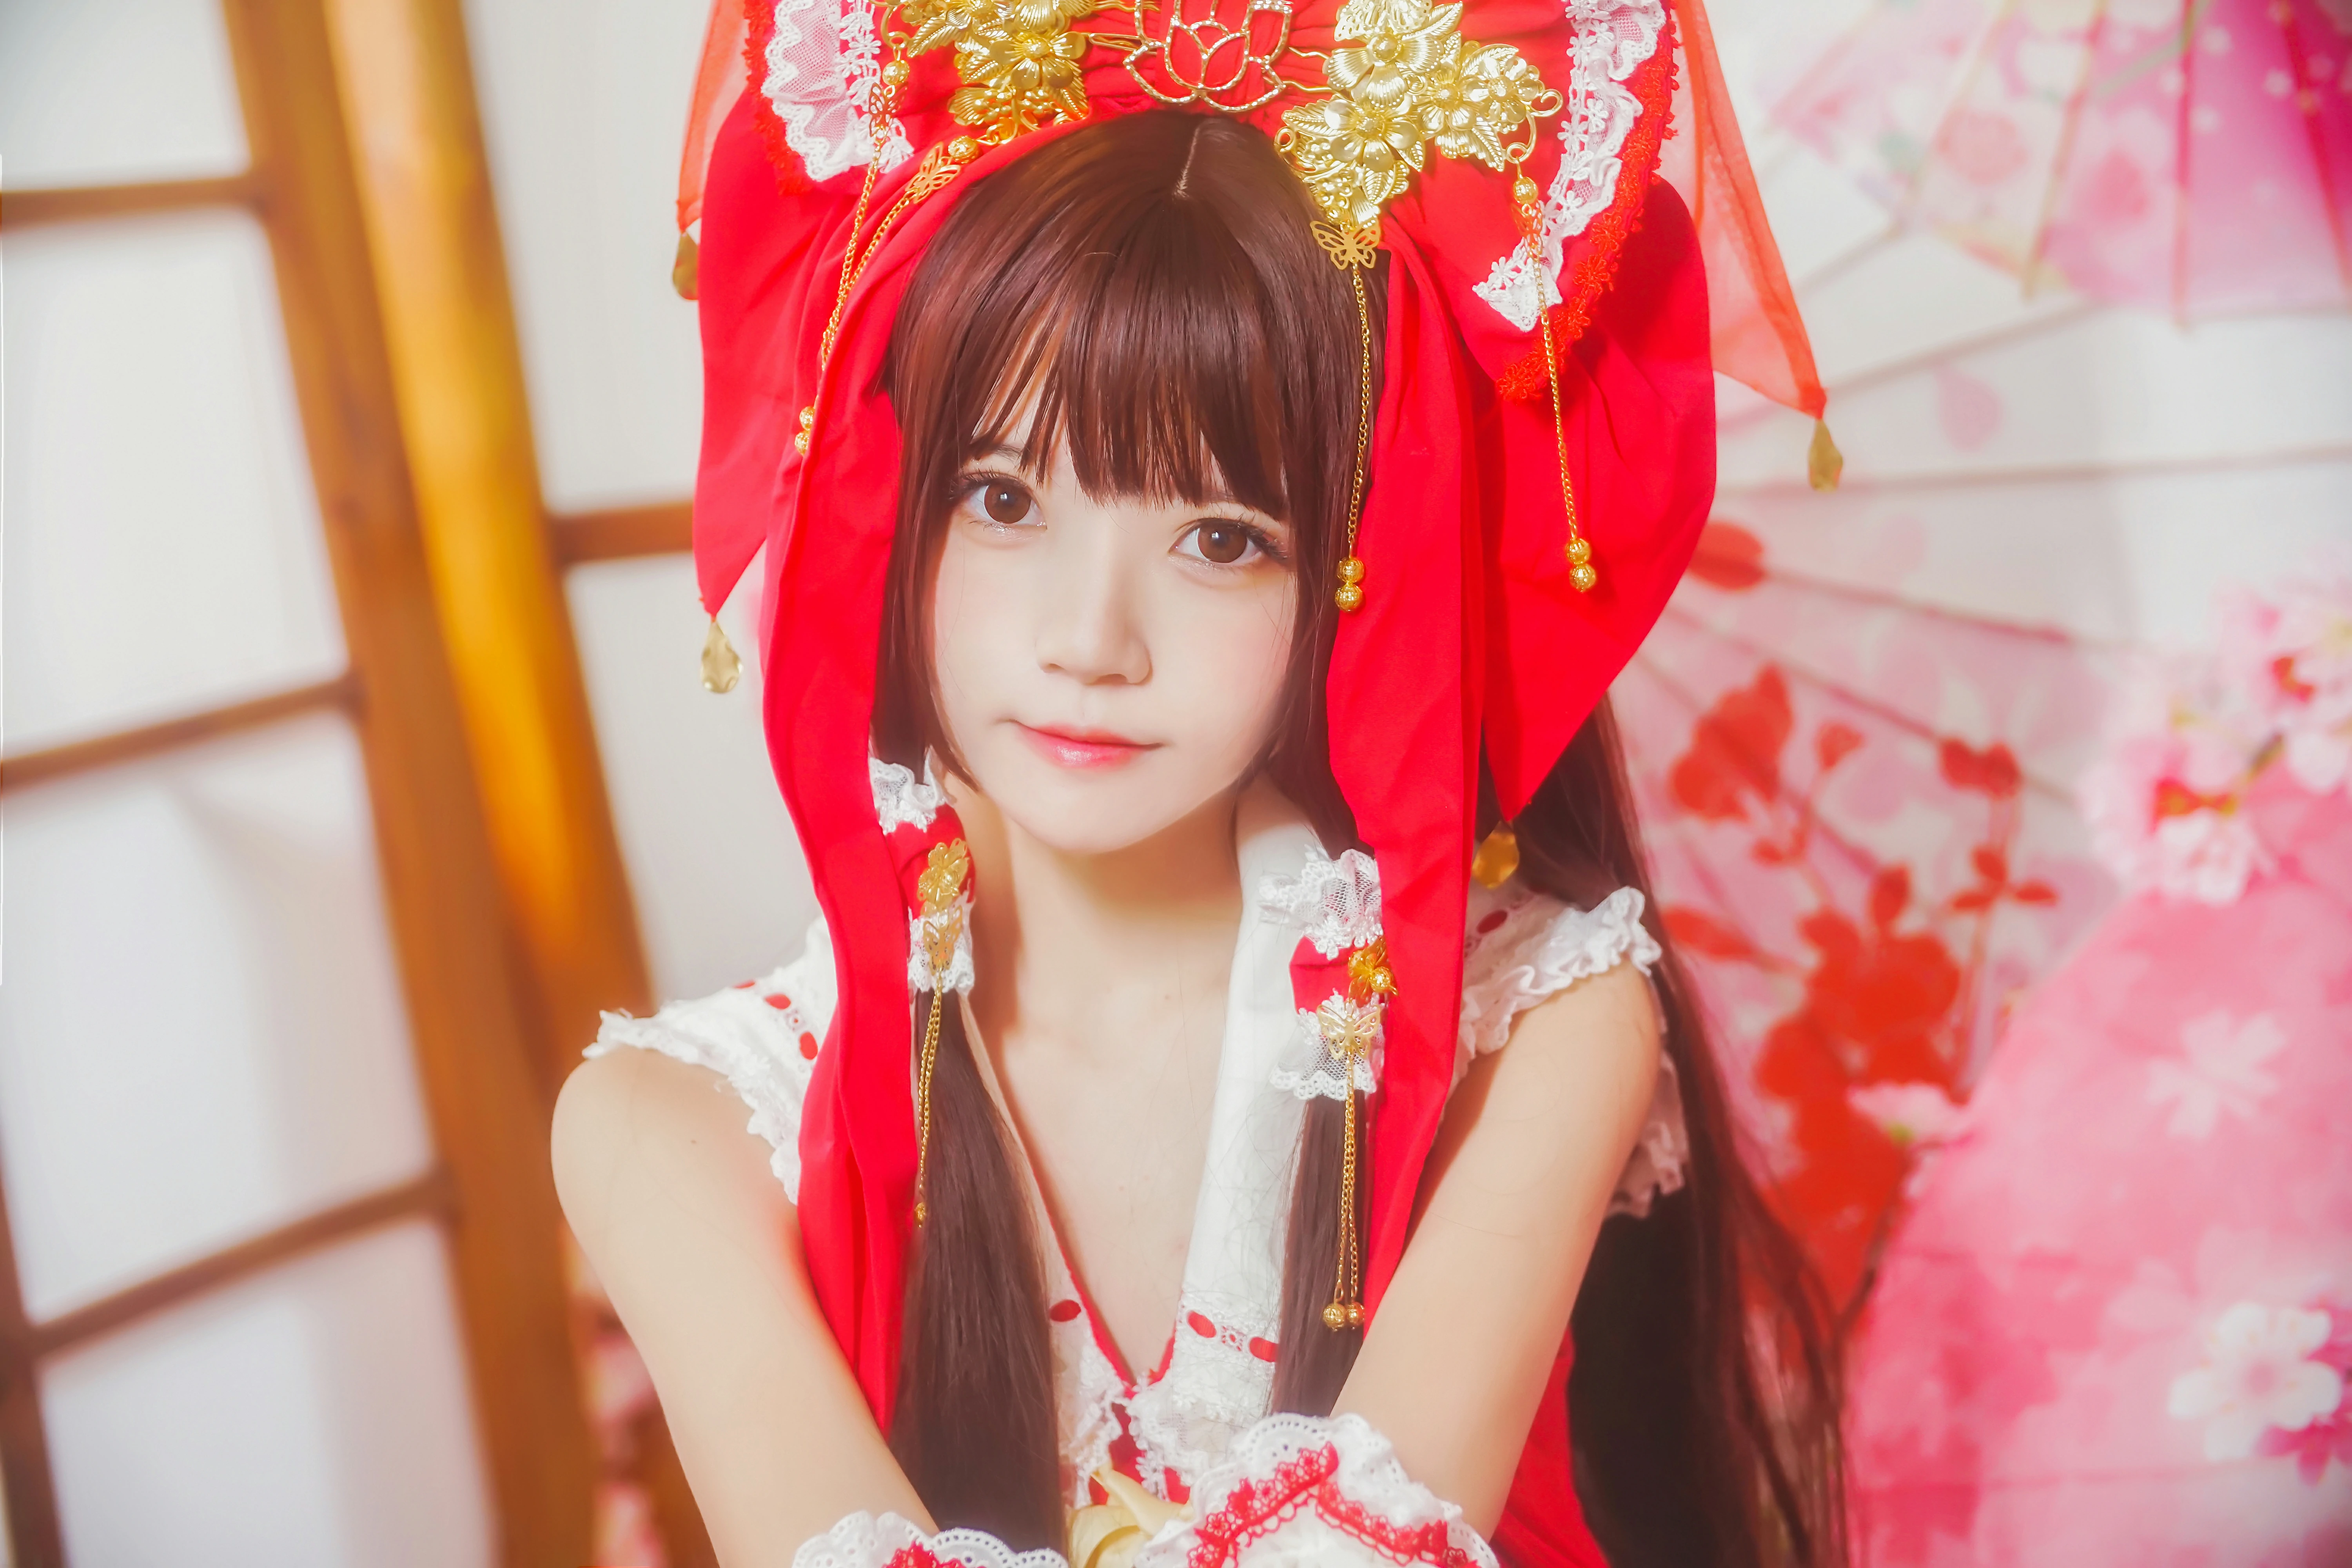 清纯少女小萝莉 桜桃喵 红色连身制服裙 和风写真,0014